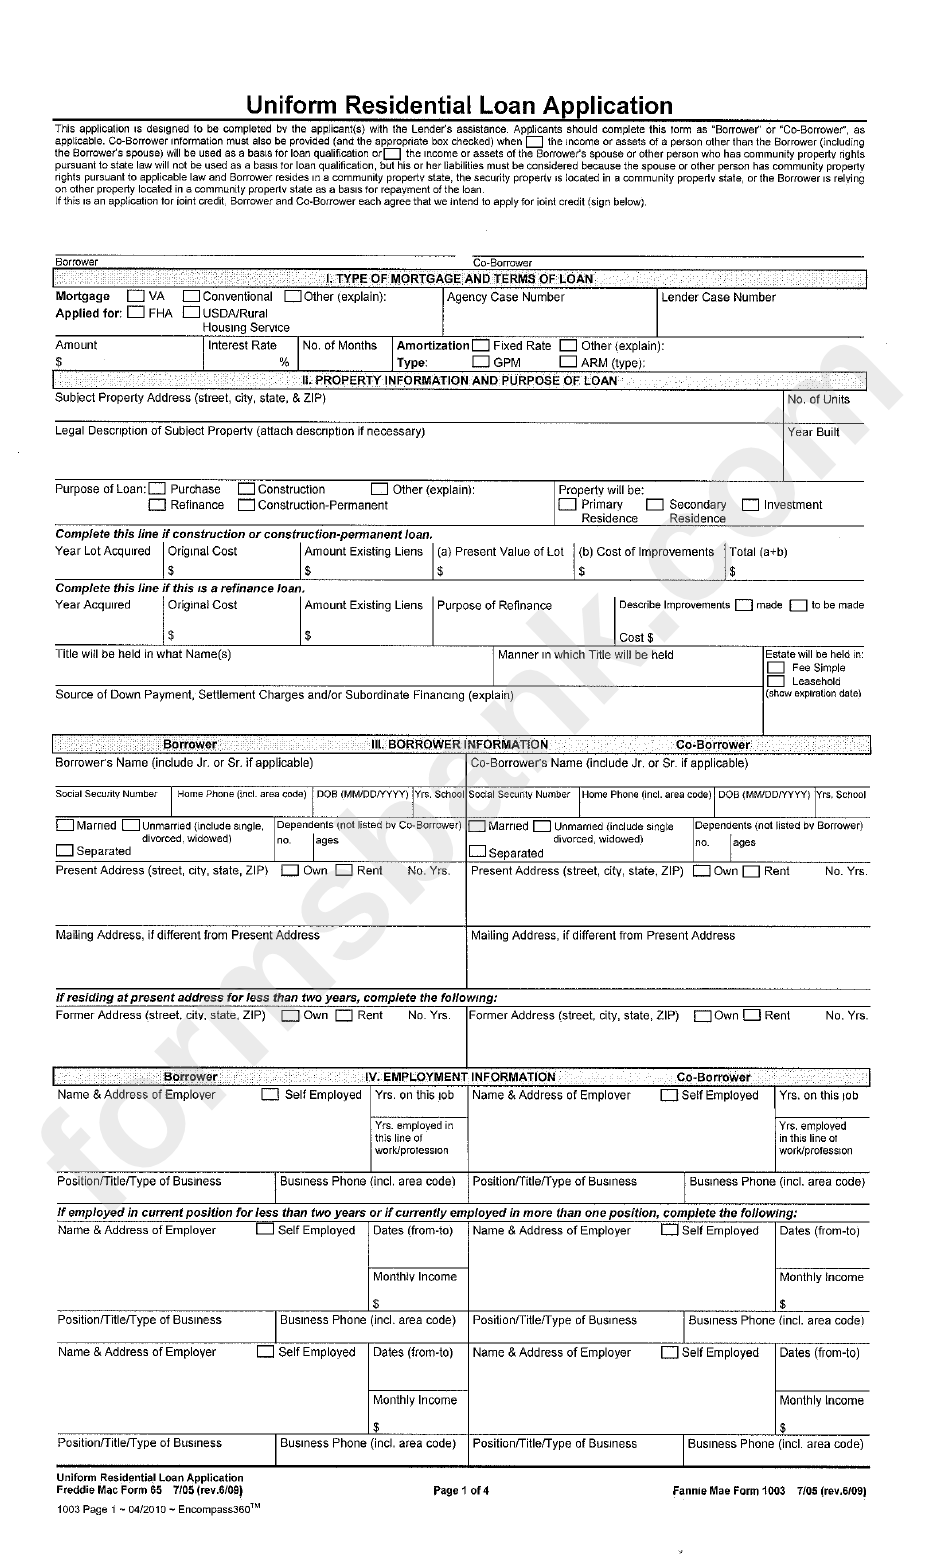 Freddie Mac Form 65 - Uniform Residential Loan Application